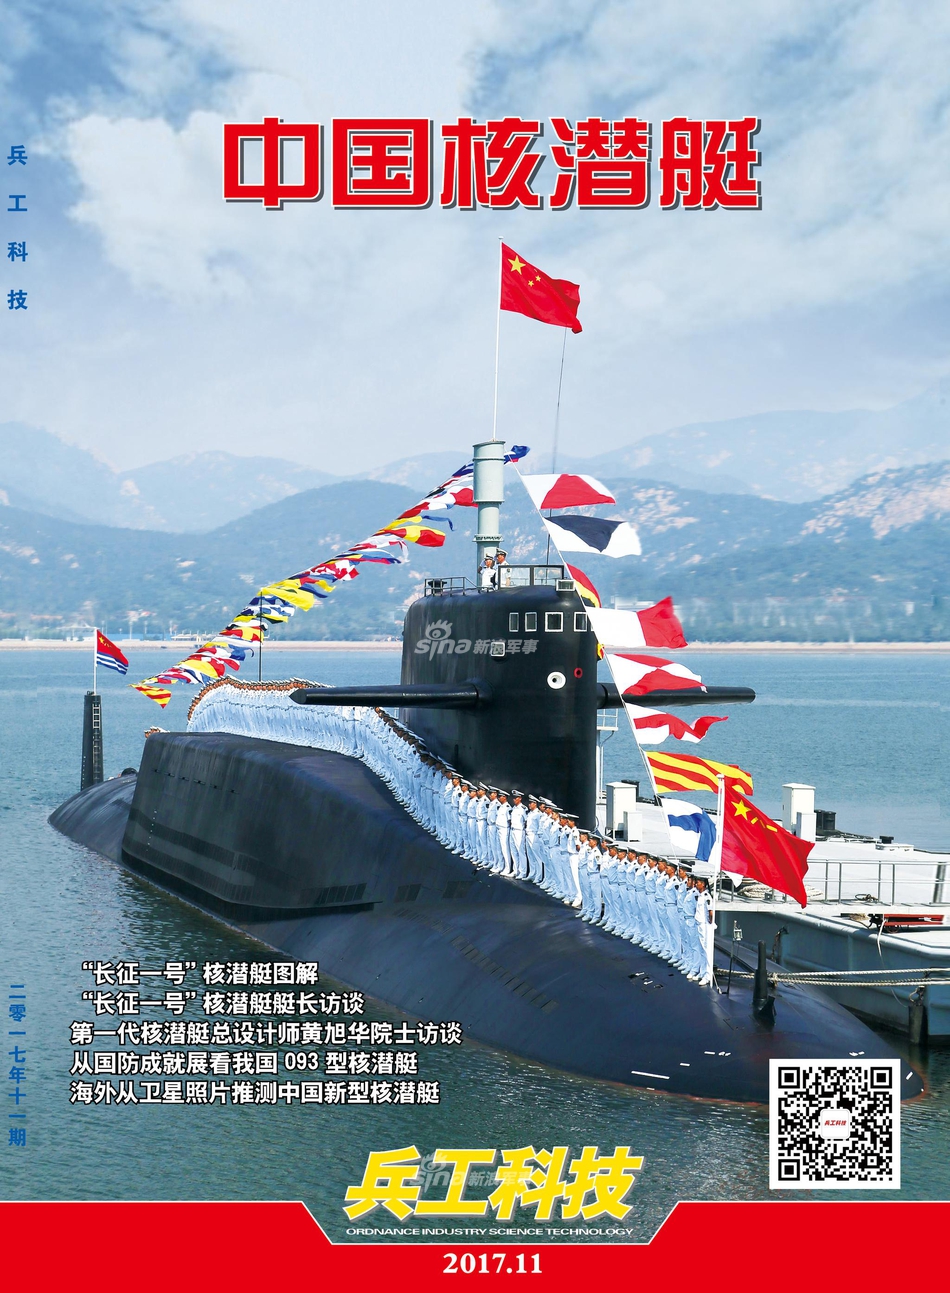 中国第一艘核潜艇完全图解:七大舱室全部揭秘